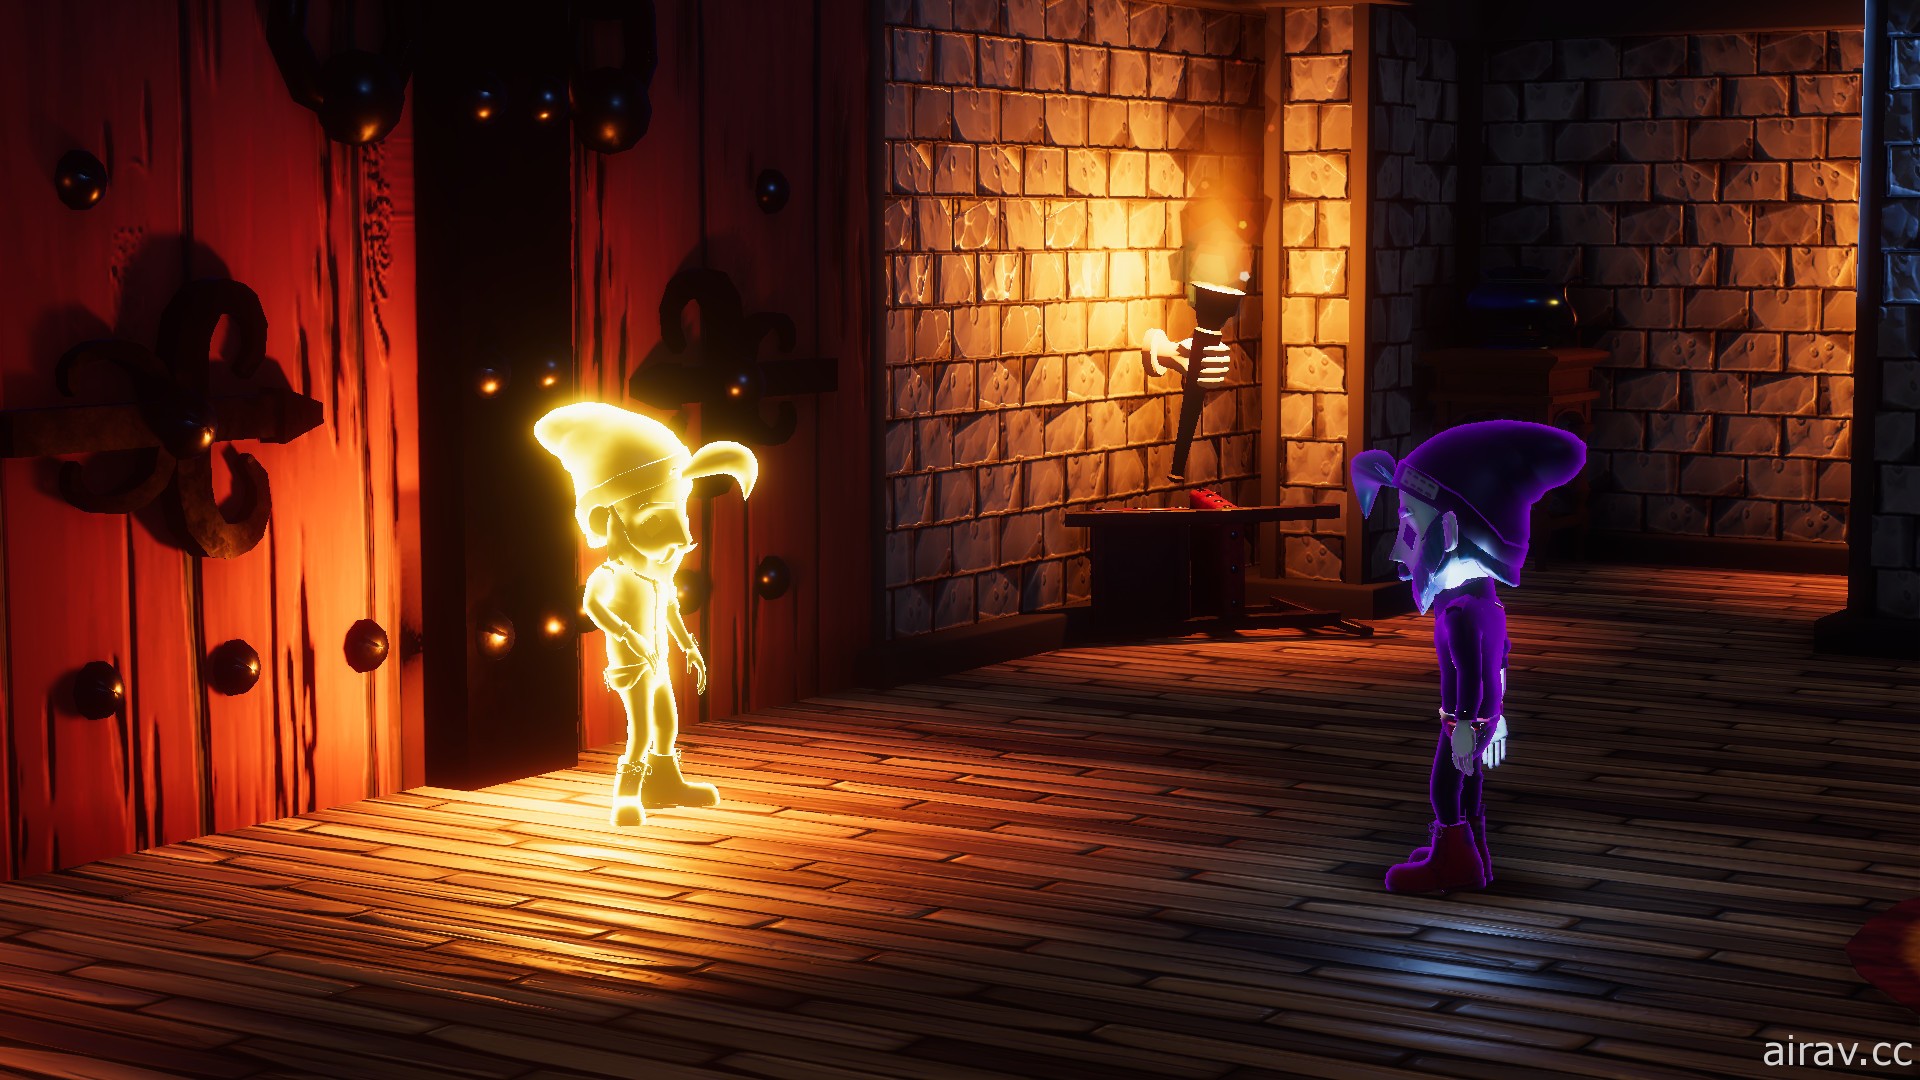 双人合作 PC 冒险游戏《来自阴影》即将推出 协力解开机关逃离黑暗城堡